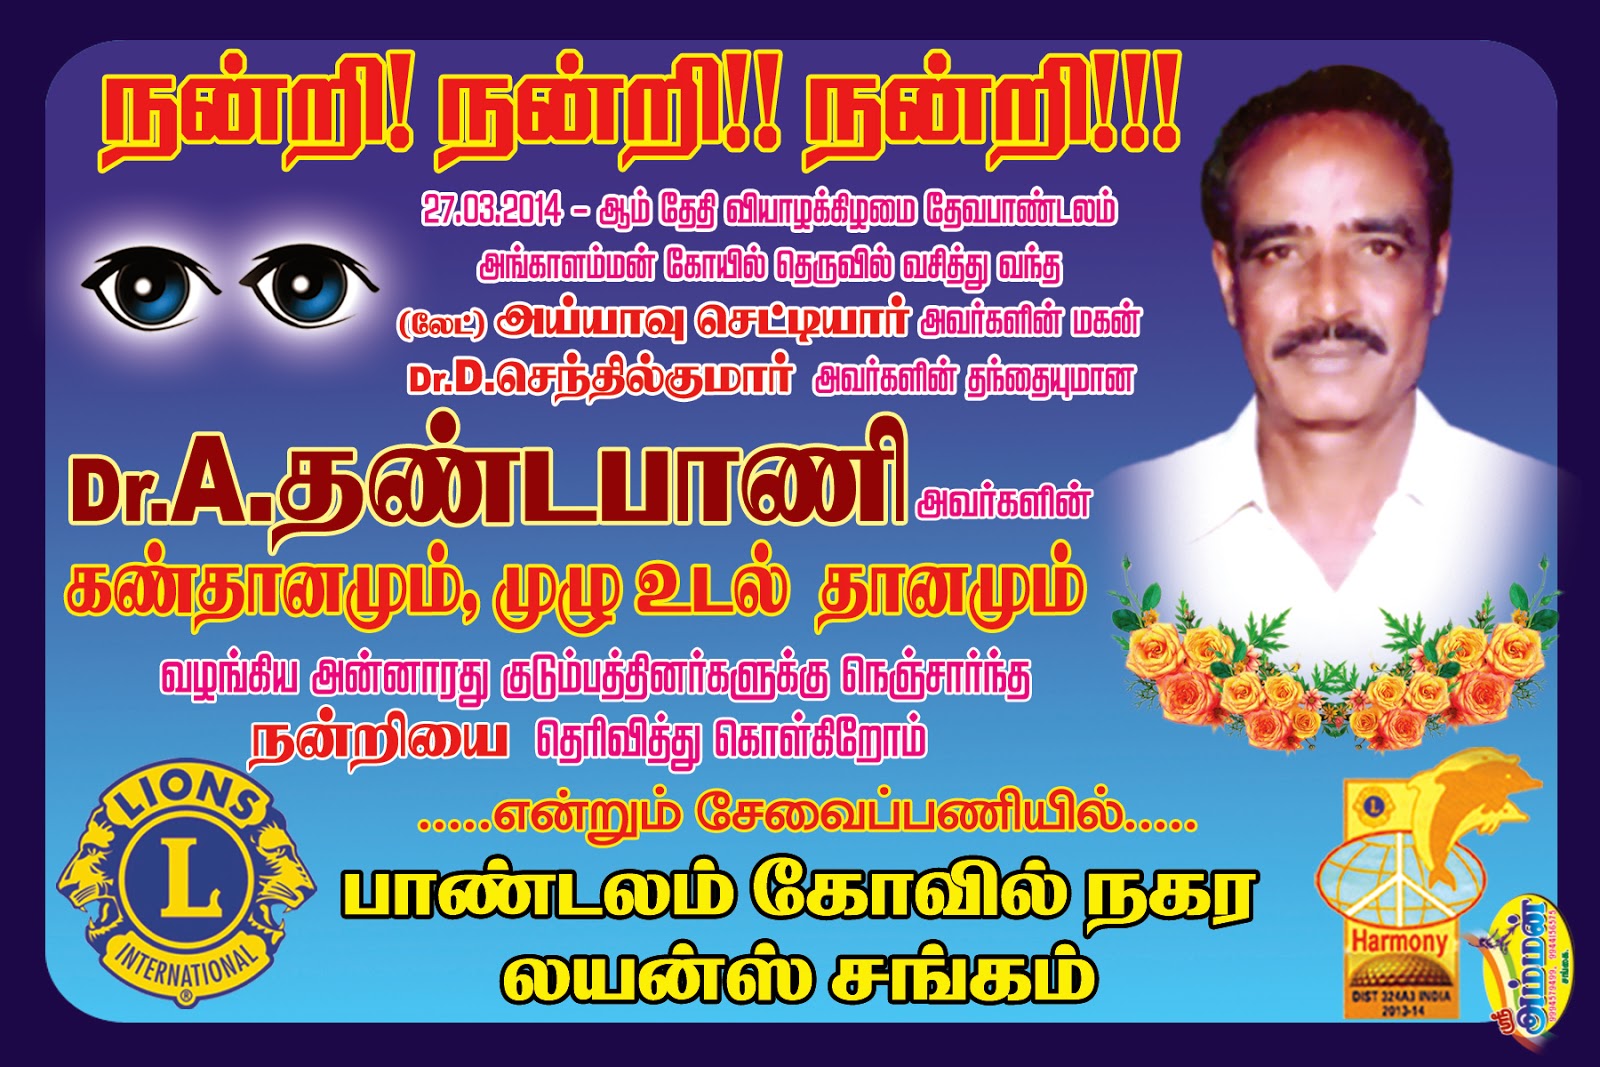  whole body donation, eye donation dr.dhandapani.A dr.senthil kumar panruti, devapandalam, sankarapuram, villupuram, chennai, velachery, puthupettai homeopathy doctor 